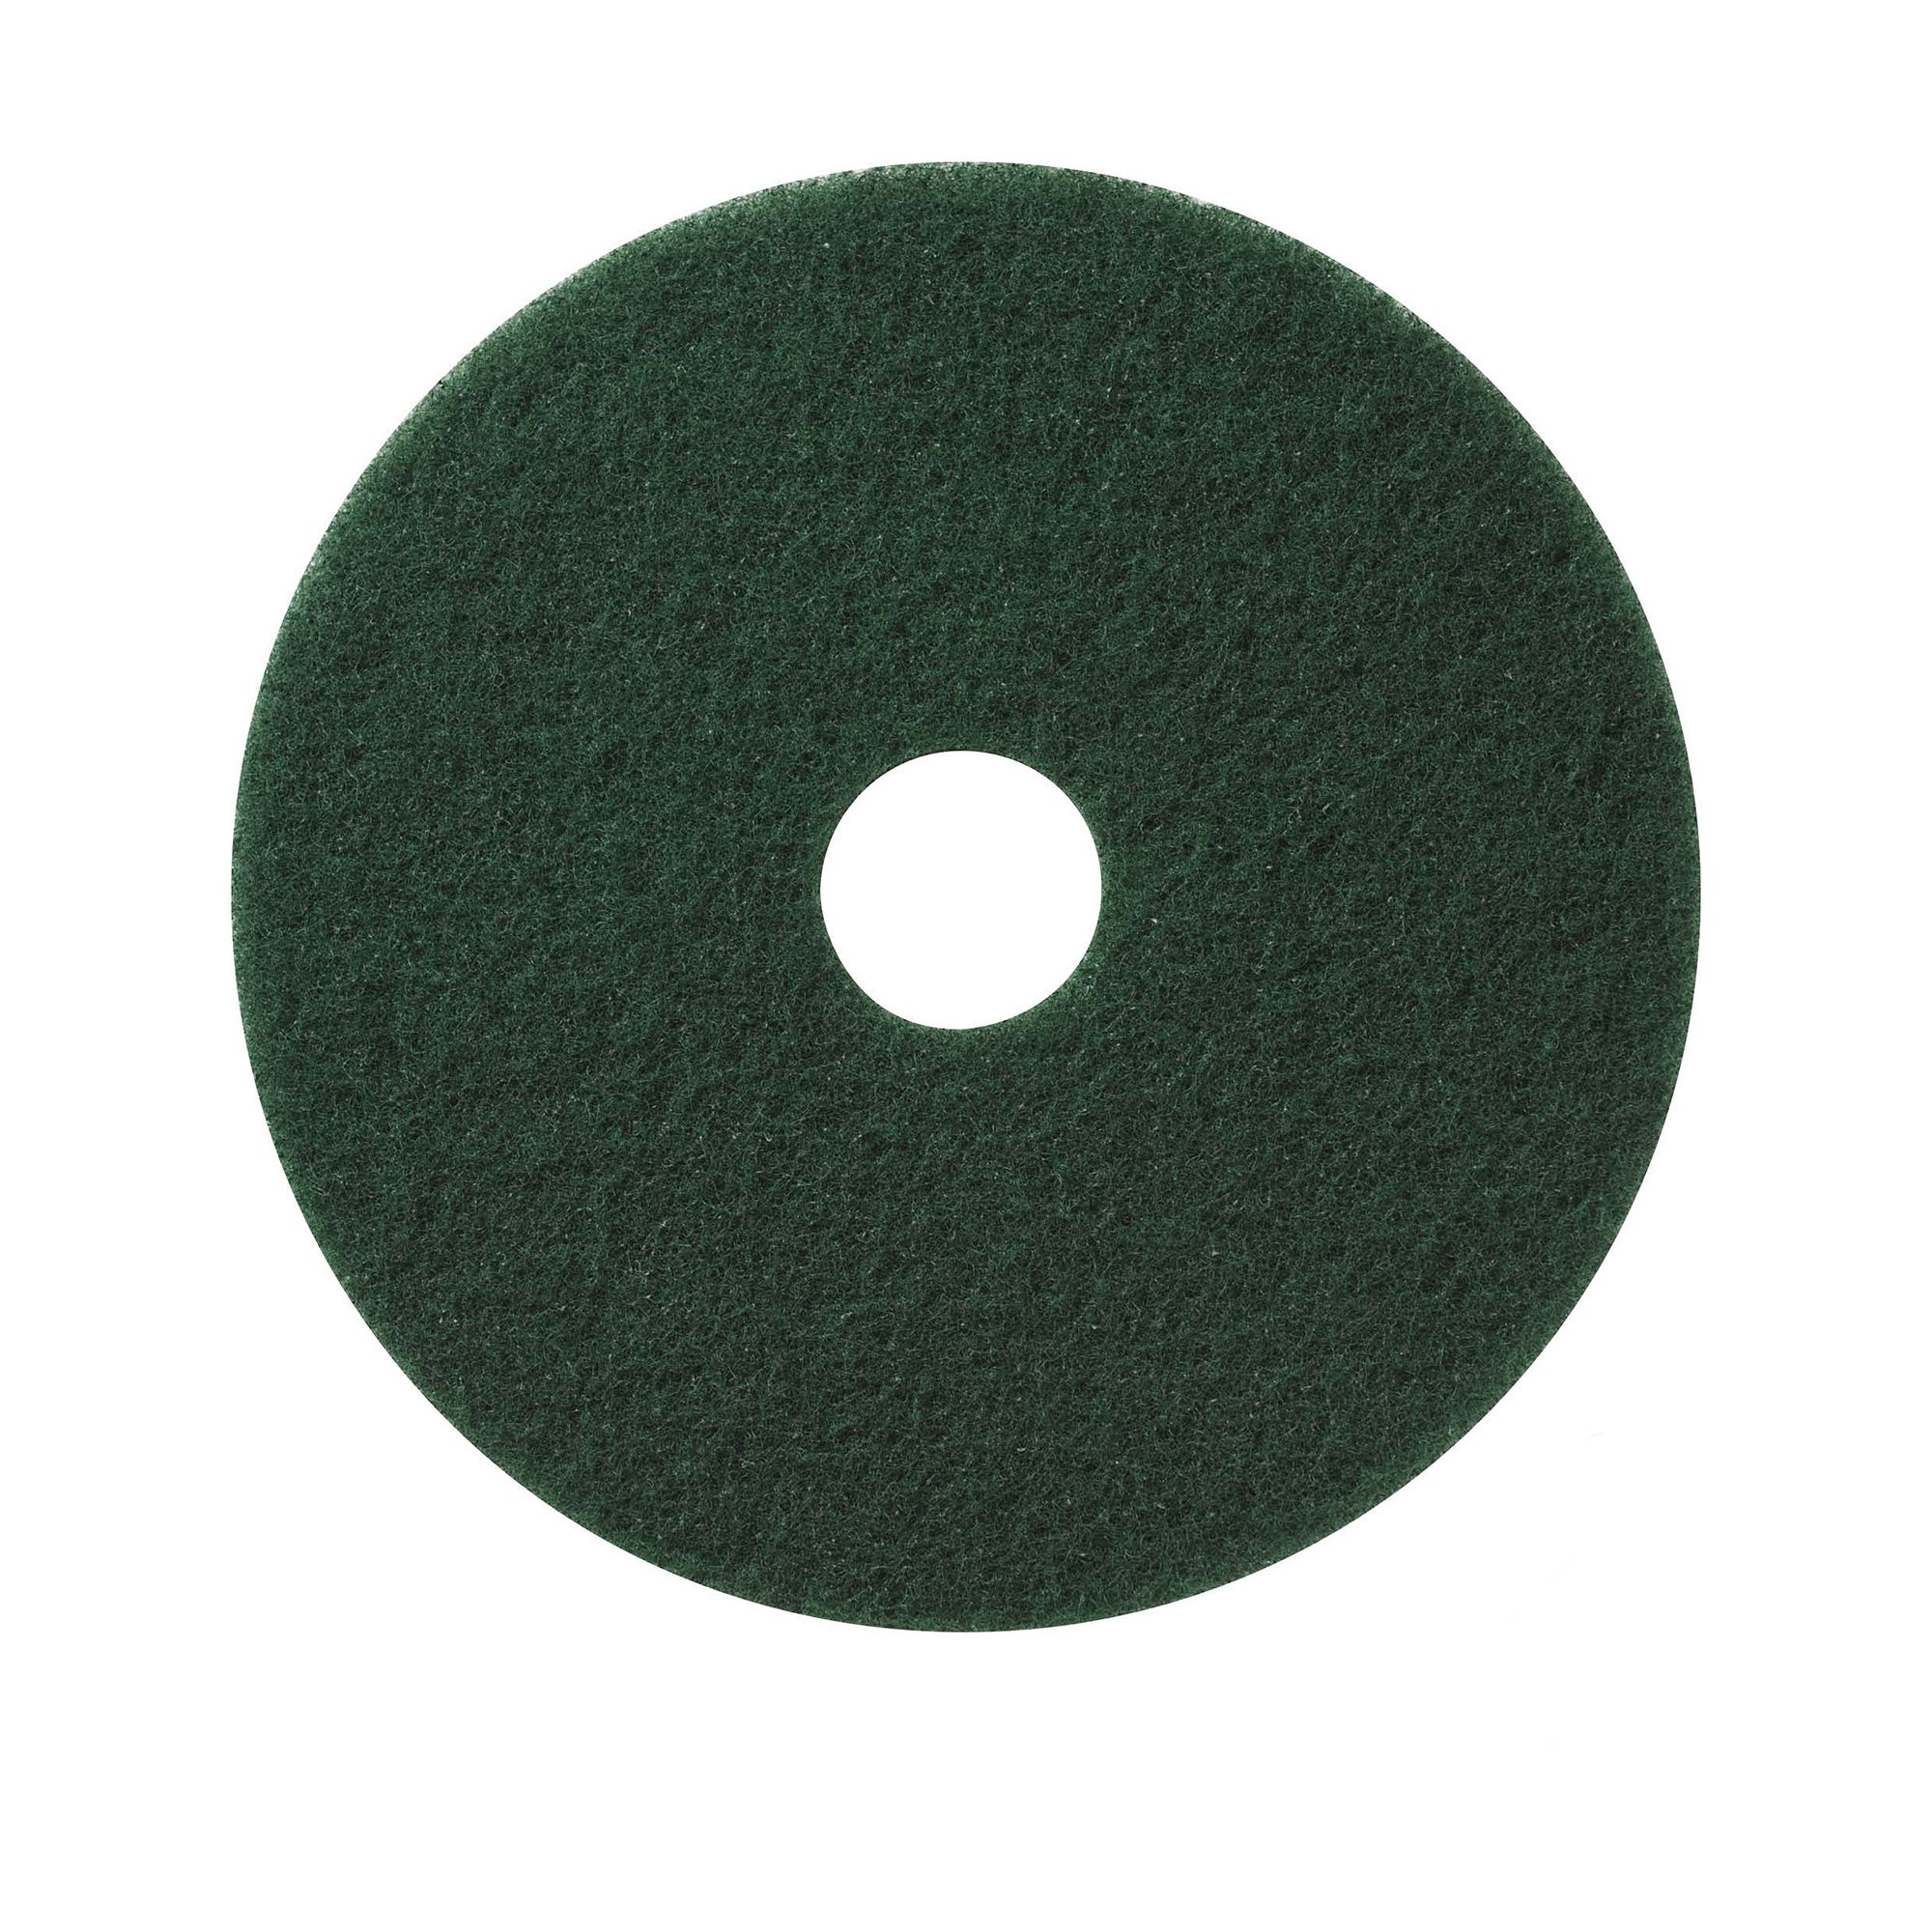 NuPad vert (gommage intensif), par 5 pièces, 13 pouces / 330 mm